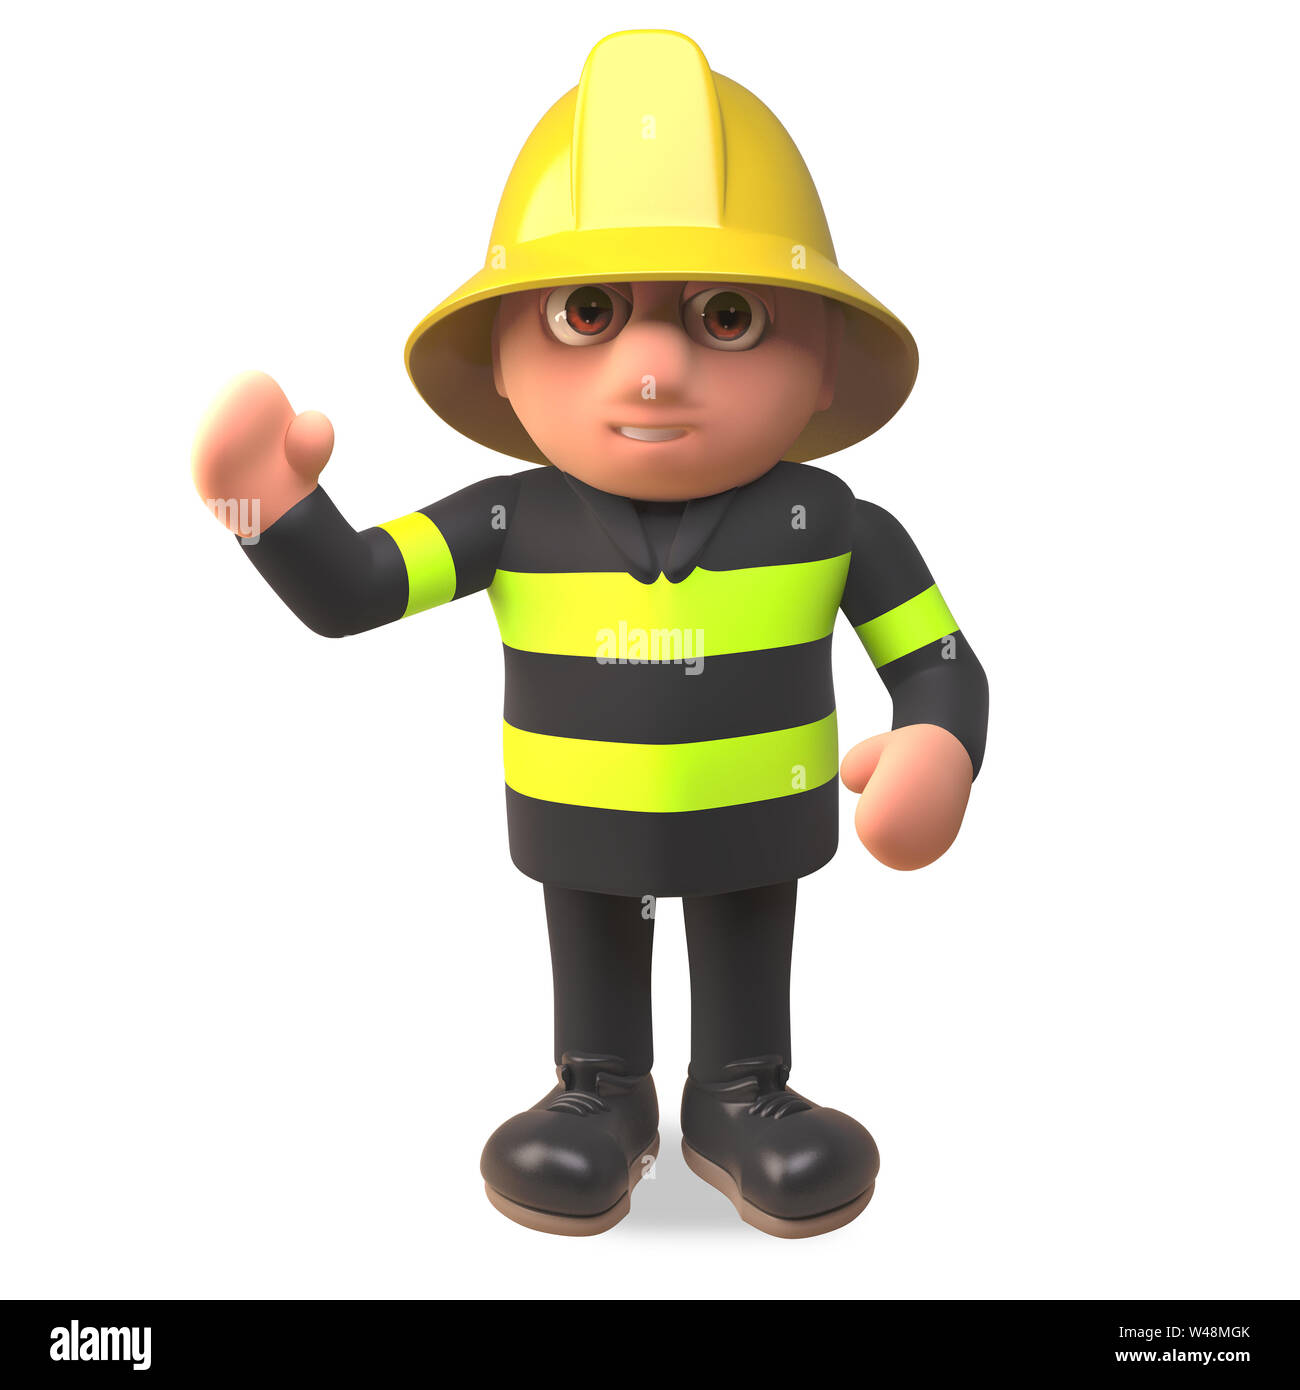 Pompier POMPIER en caractère caractère haute visibilité forme bonjour, illustration 3D render Banque D'Images